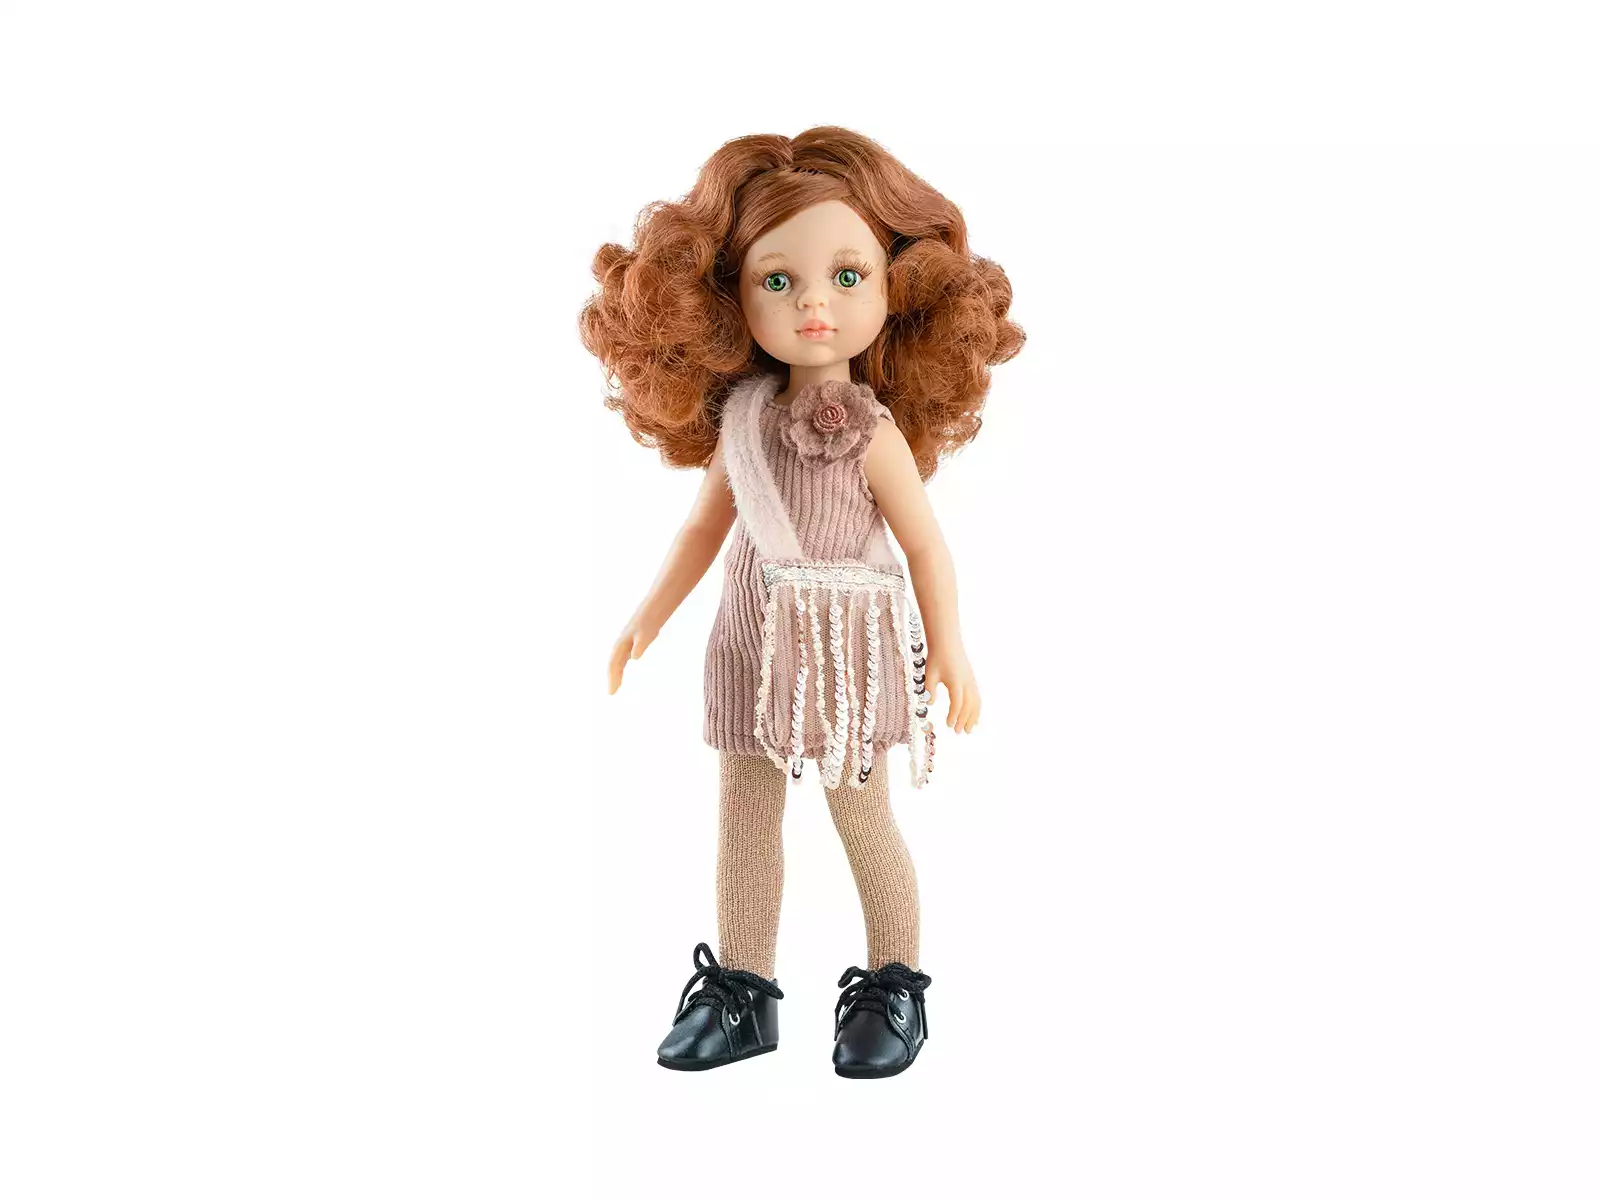 Taille blanche baskets en toile pour poupée Paola retina, Mini chaussures  de gymnastique à la mode pour Tilda,1/4 Bjd, accessoires pour poupées